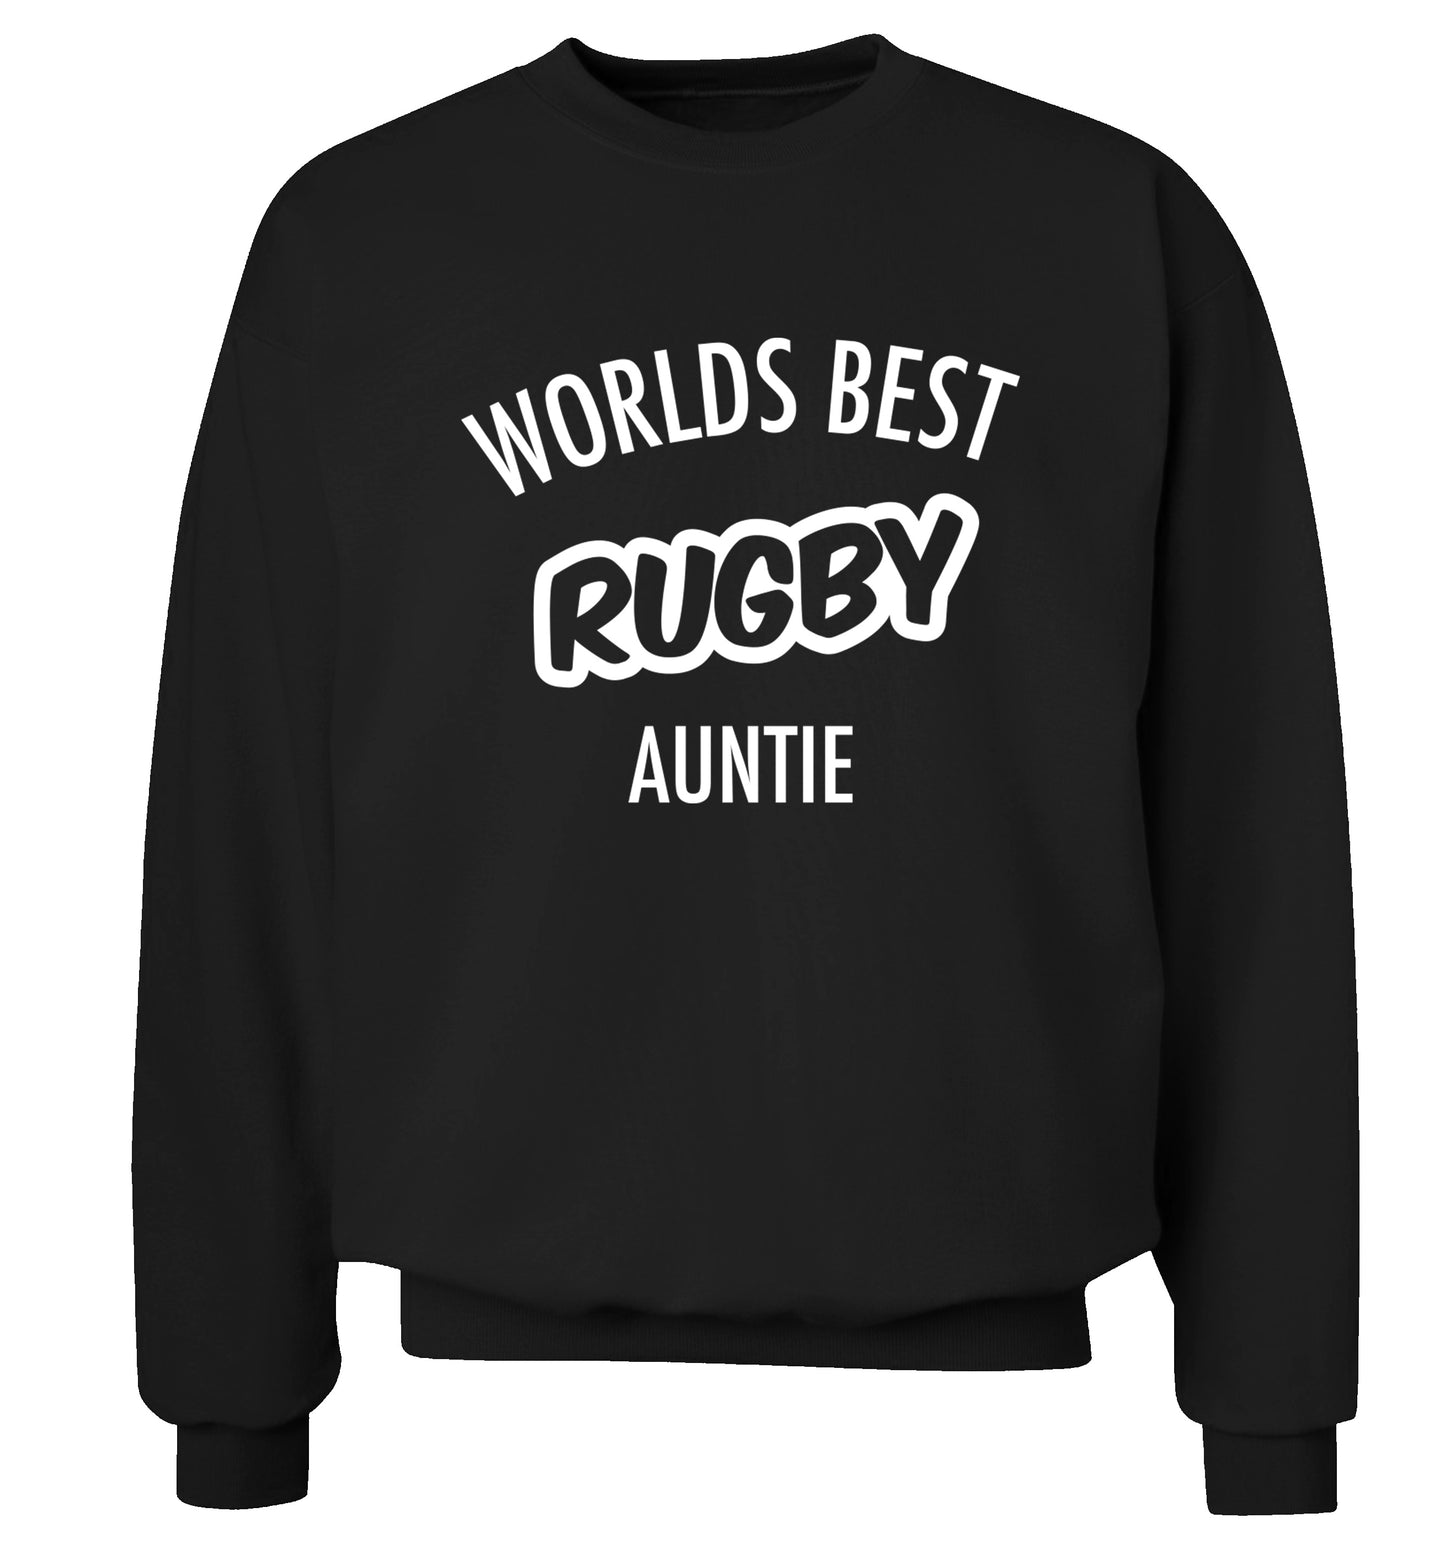 Worlds best rugby auntie Adult's unisex black Sweater 2XL